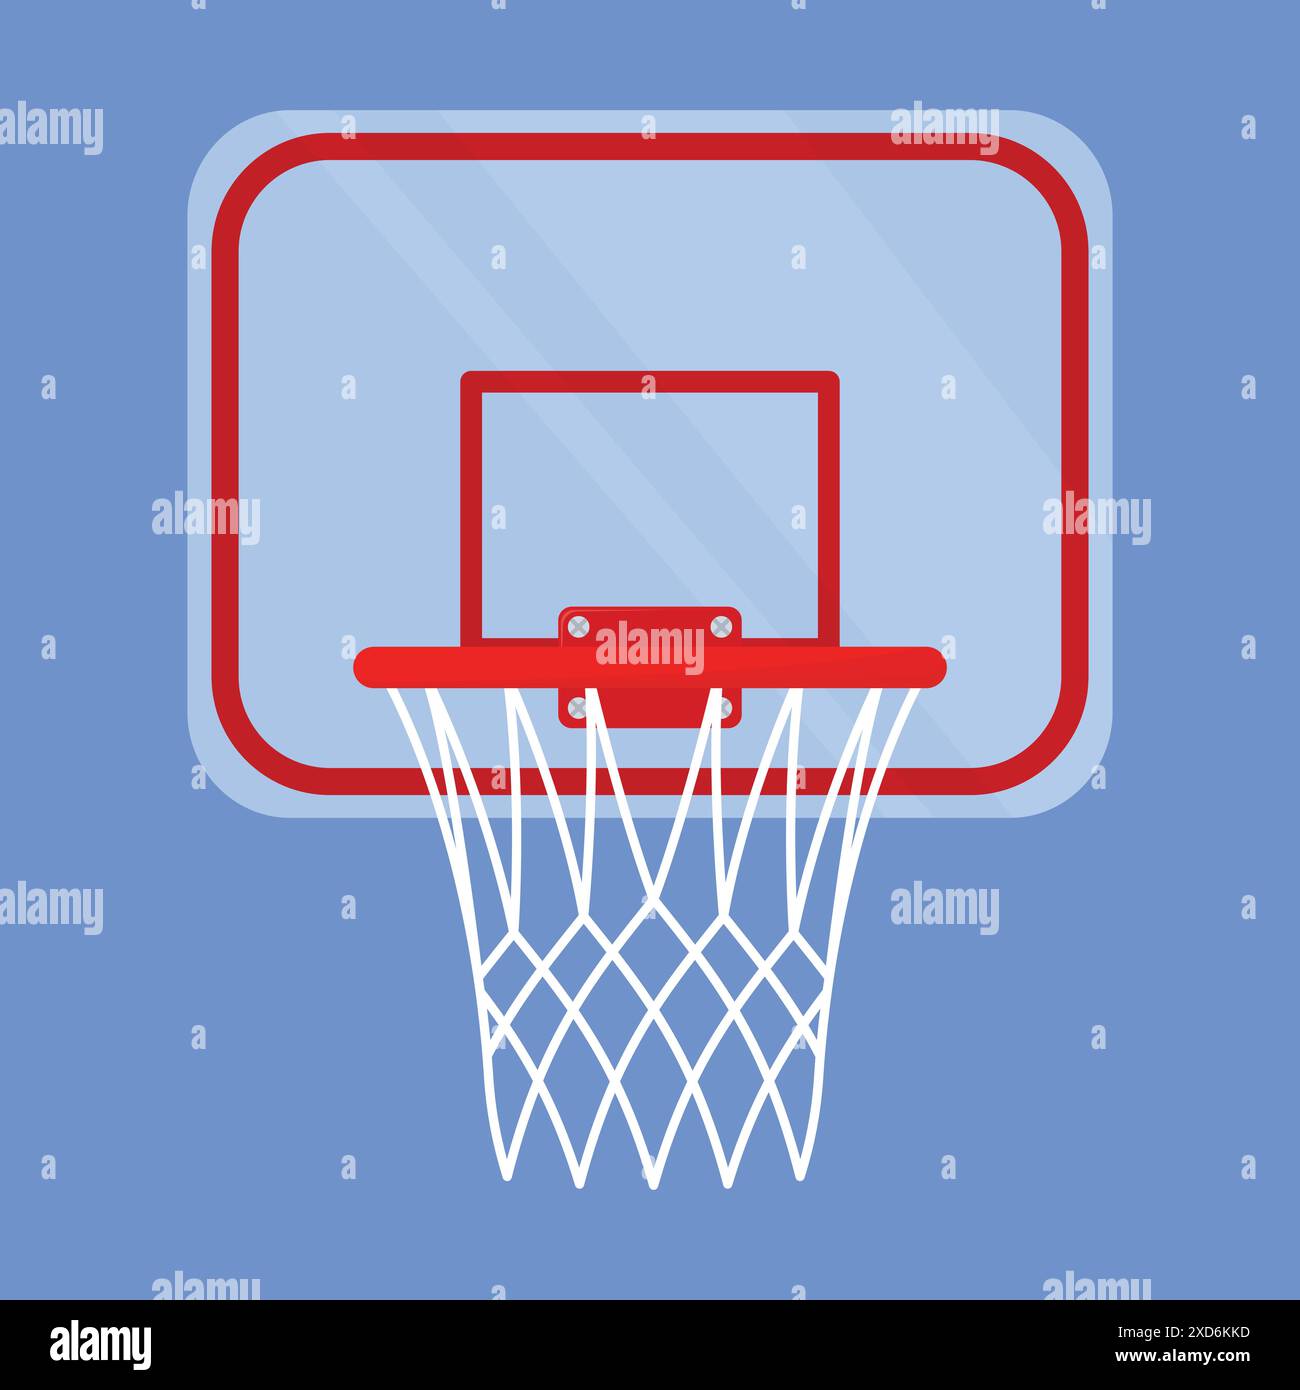 basketball hoop vector icon. Basketball game hoop net illustration. Basketball Hoop goal net. Stock Vector